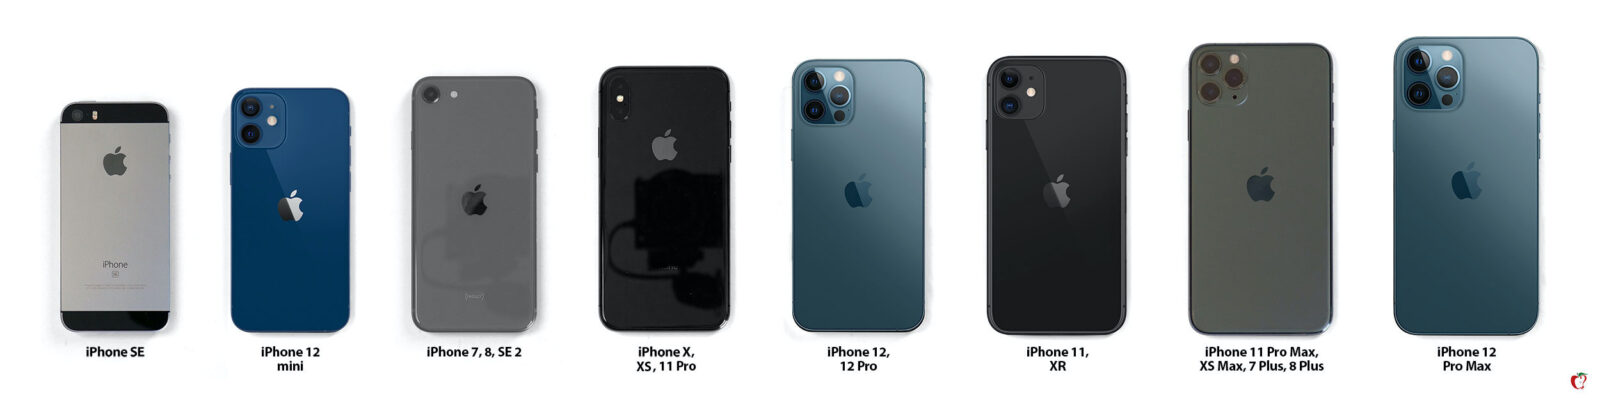 iPhone 12 dimensioni, tutti i modelli a confronto per scegliere